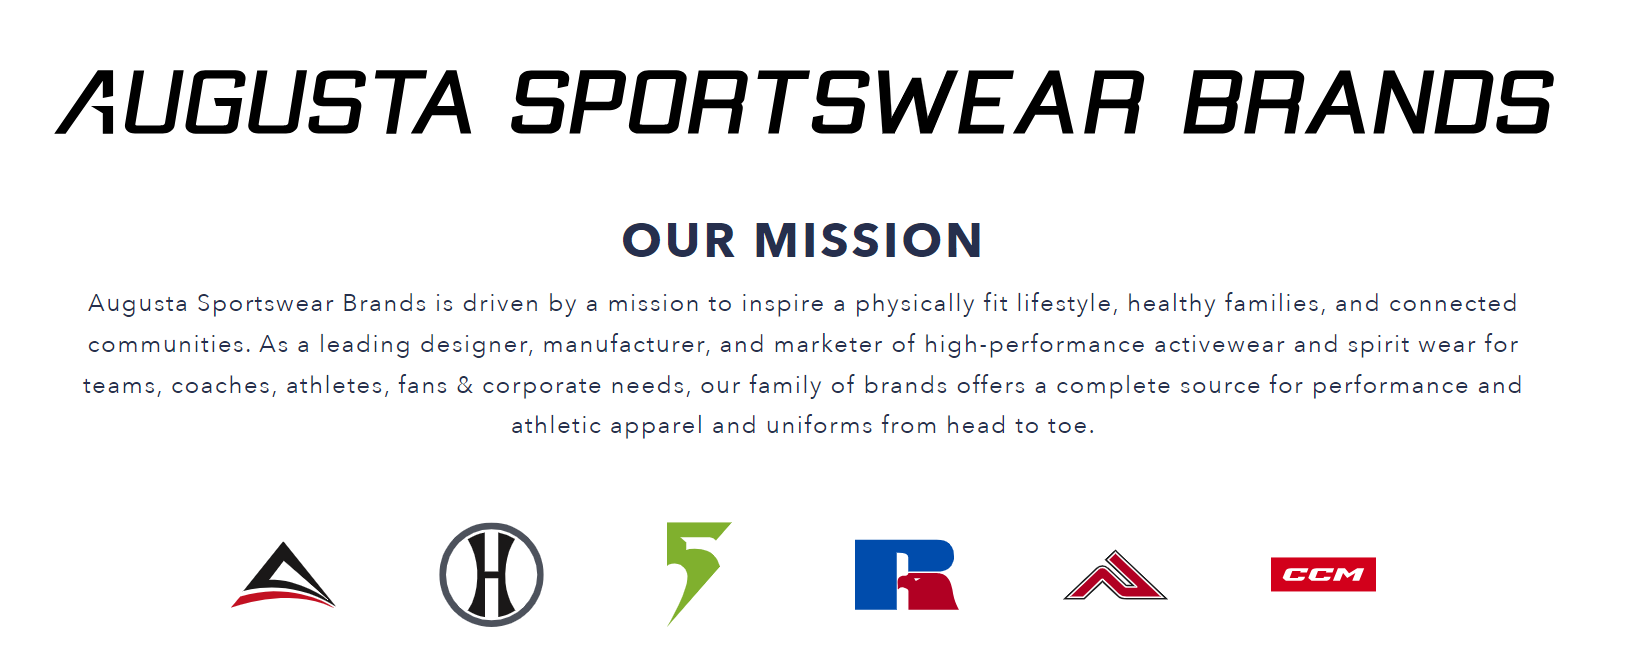 美国青少年体育服装供应商 Augusta Sportswear、Founder Sport被投资公司 Platinum Equity 收购